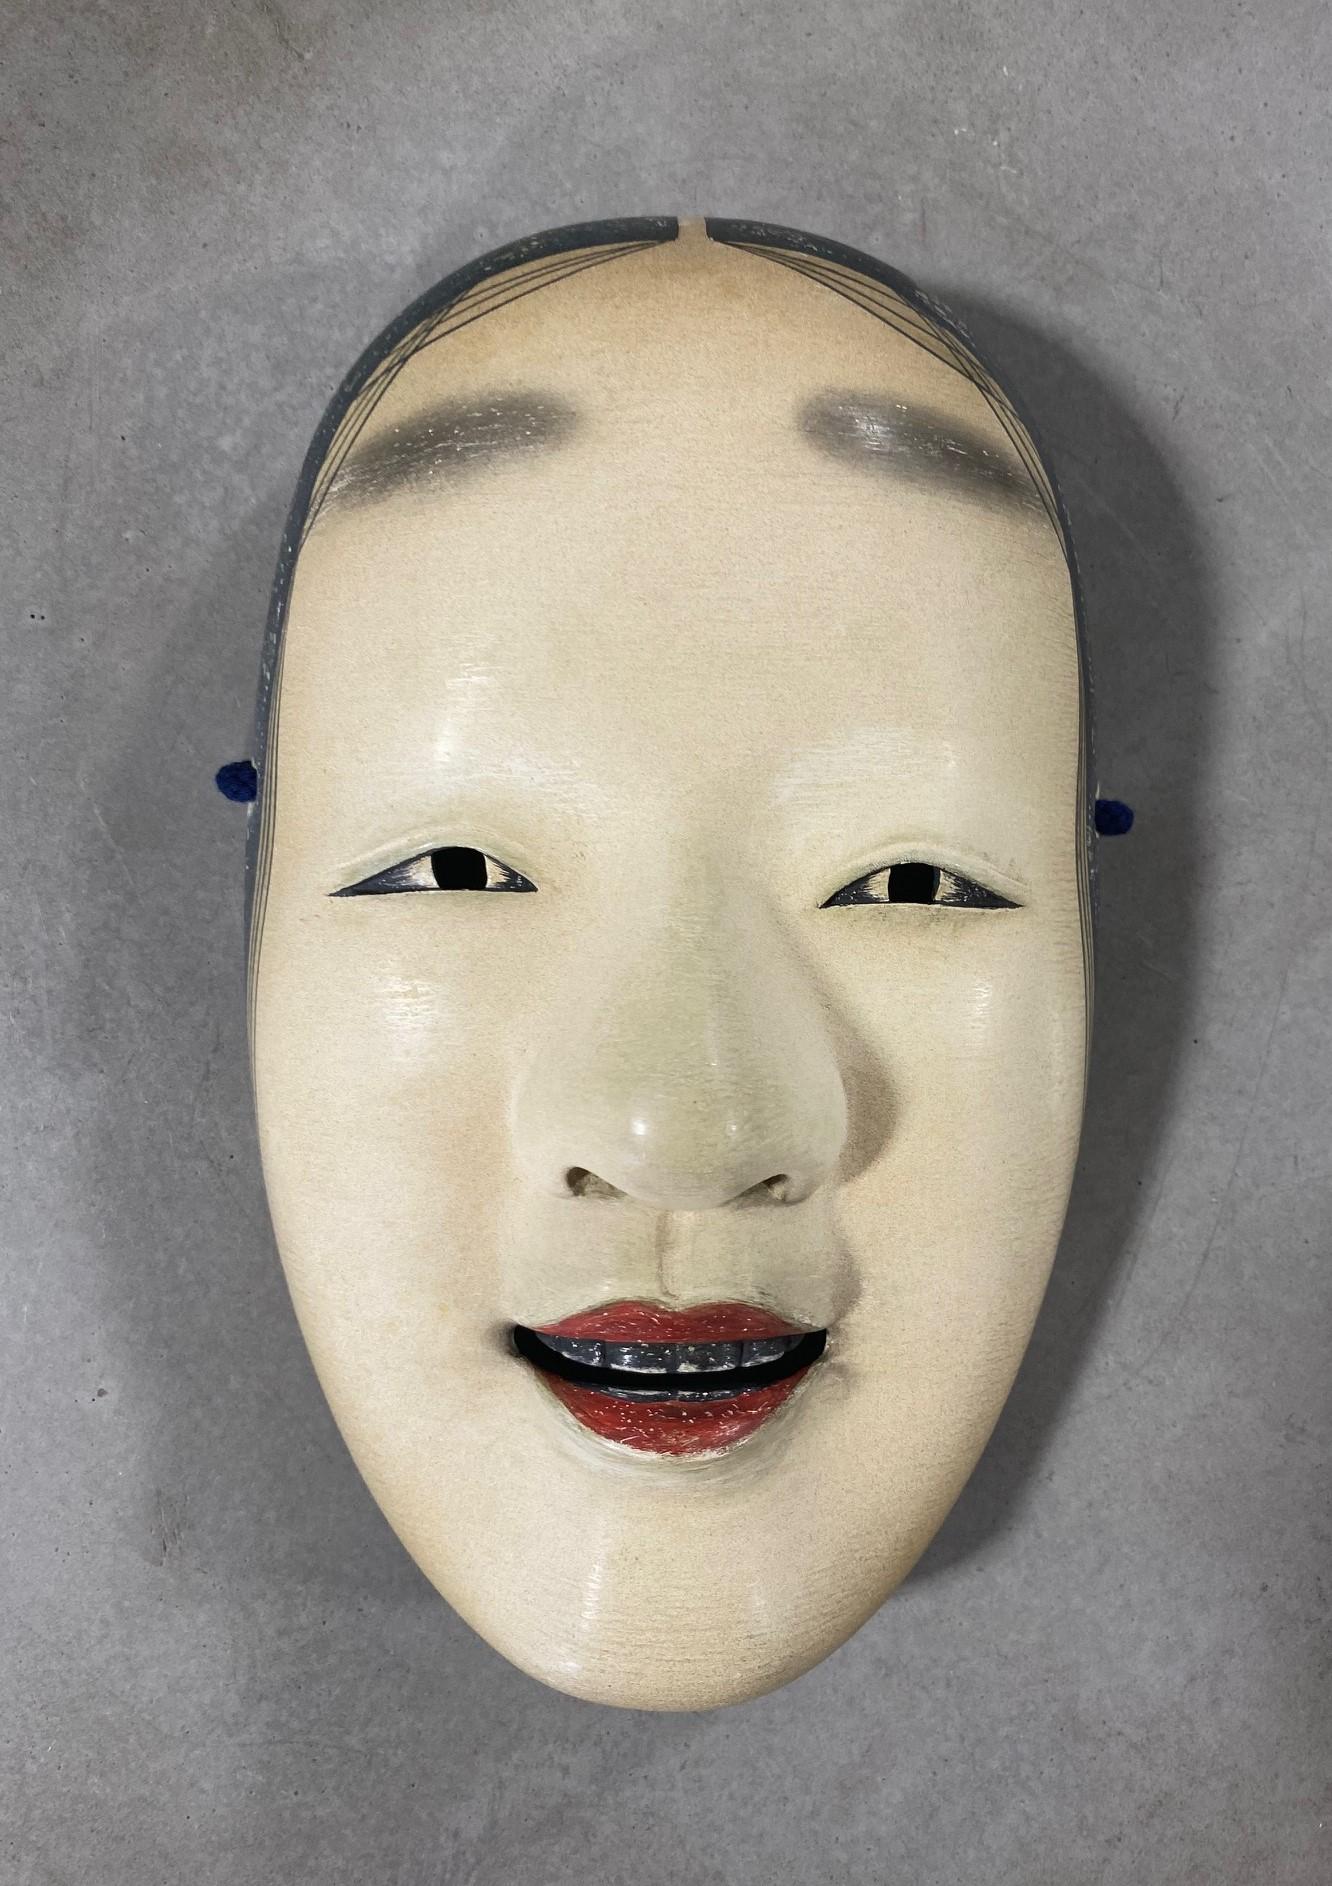 Eine wirklich schöne, wunderbar gearbeitete, verführerische Frauenmaske, die für das japanische Noh-Theater hergestellt wurde. 

Diese Maske ist handgefertigt und aus Naturholz und Lack geschnitzt.

Der Charakter und die Maske von Omi-Onna